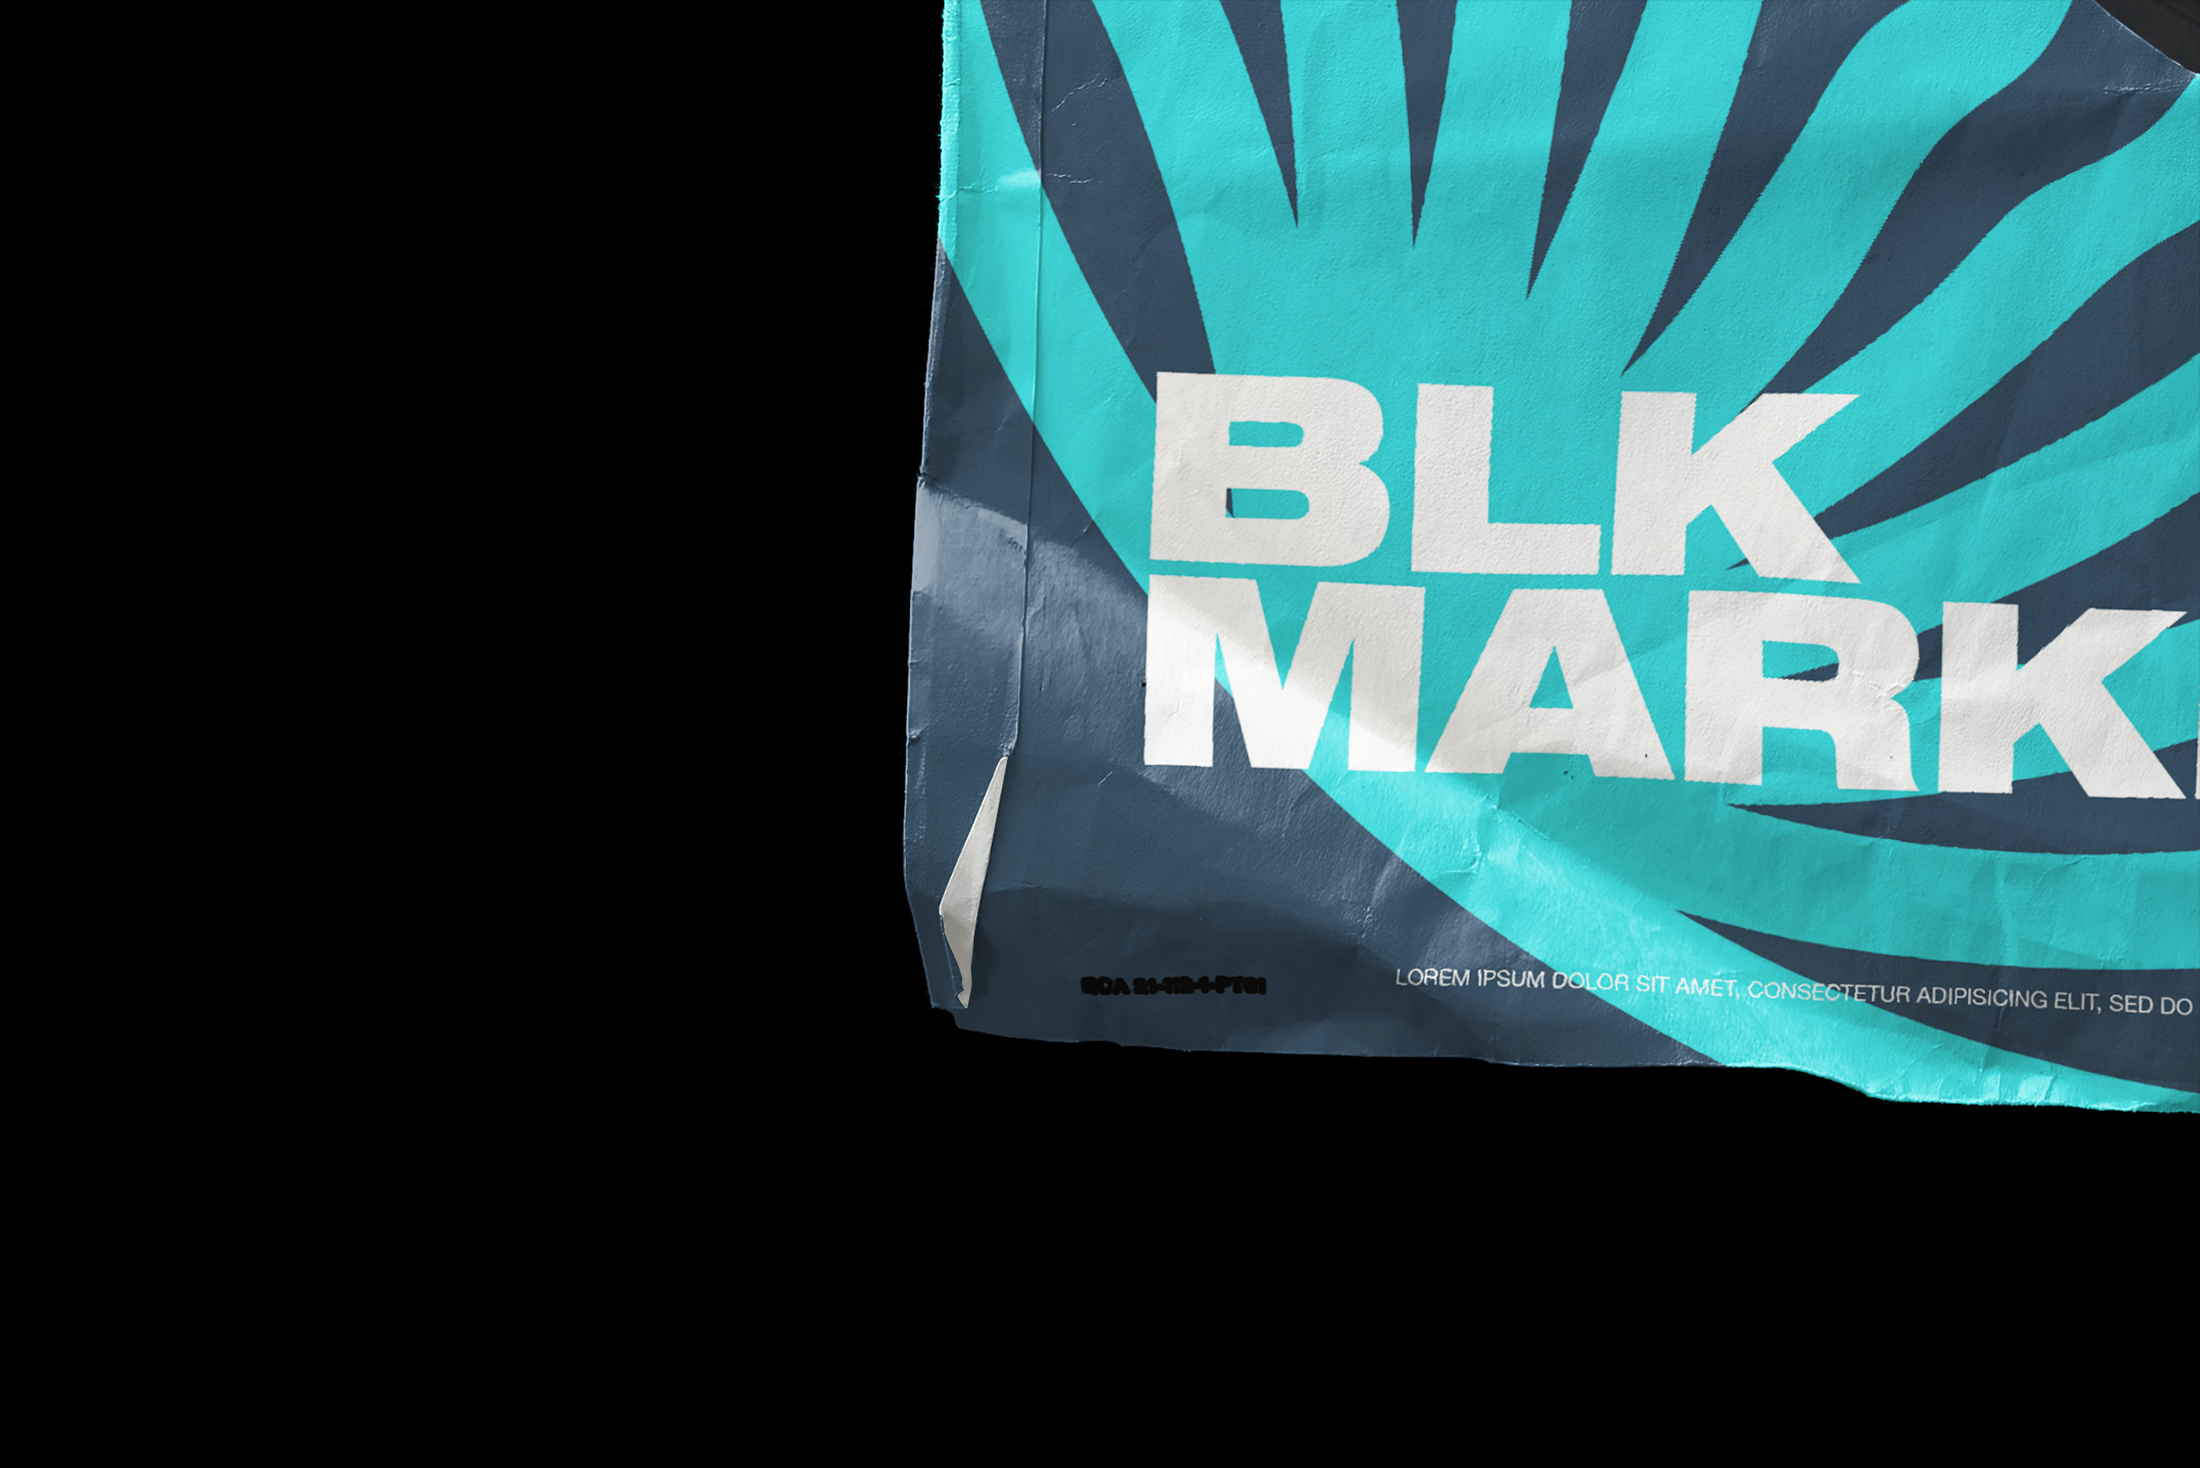 复古撕裂的黑胶唱片纸袋包装封面设计提案样机模板 Blkmar